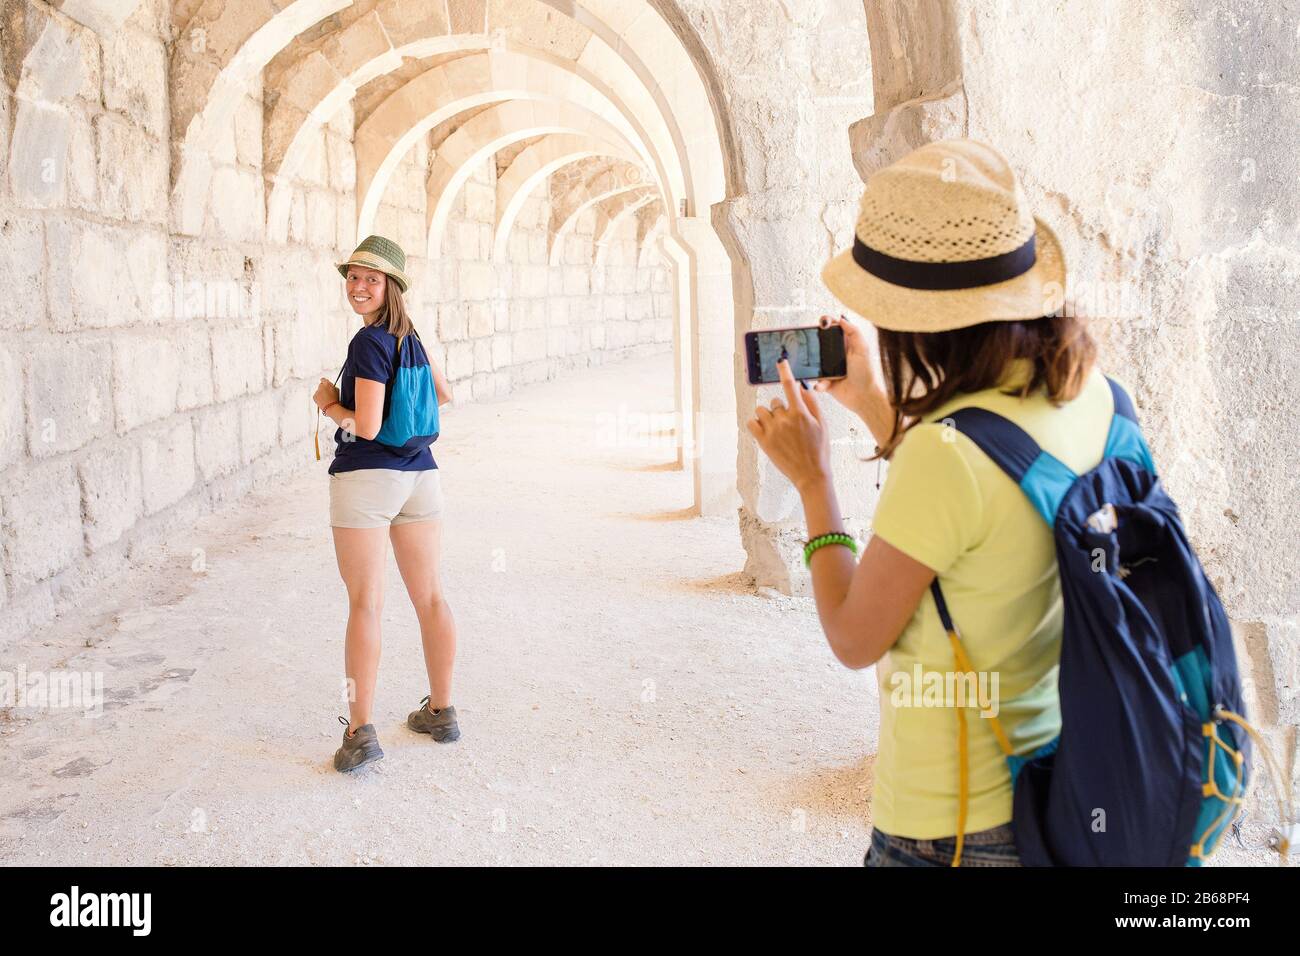 Vue arrière de la jeune femme de tourisme avec appareil photo de téléphone intelligent prenant des photos de son ami dans un bâtiment ancien Banque D'Images